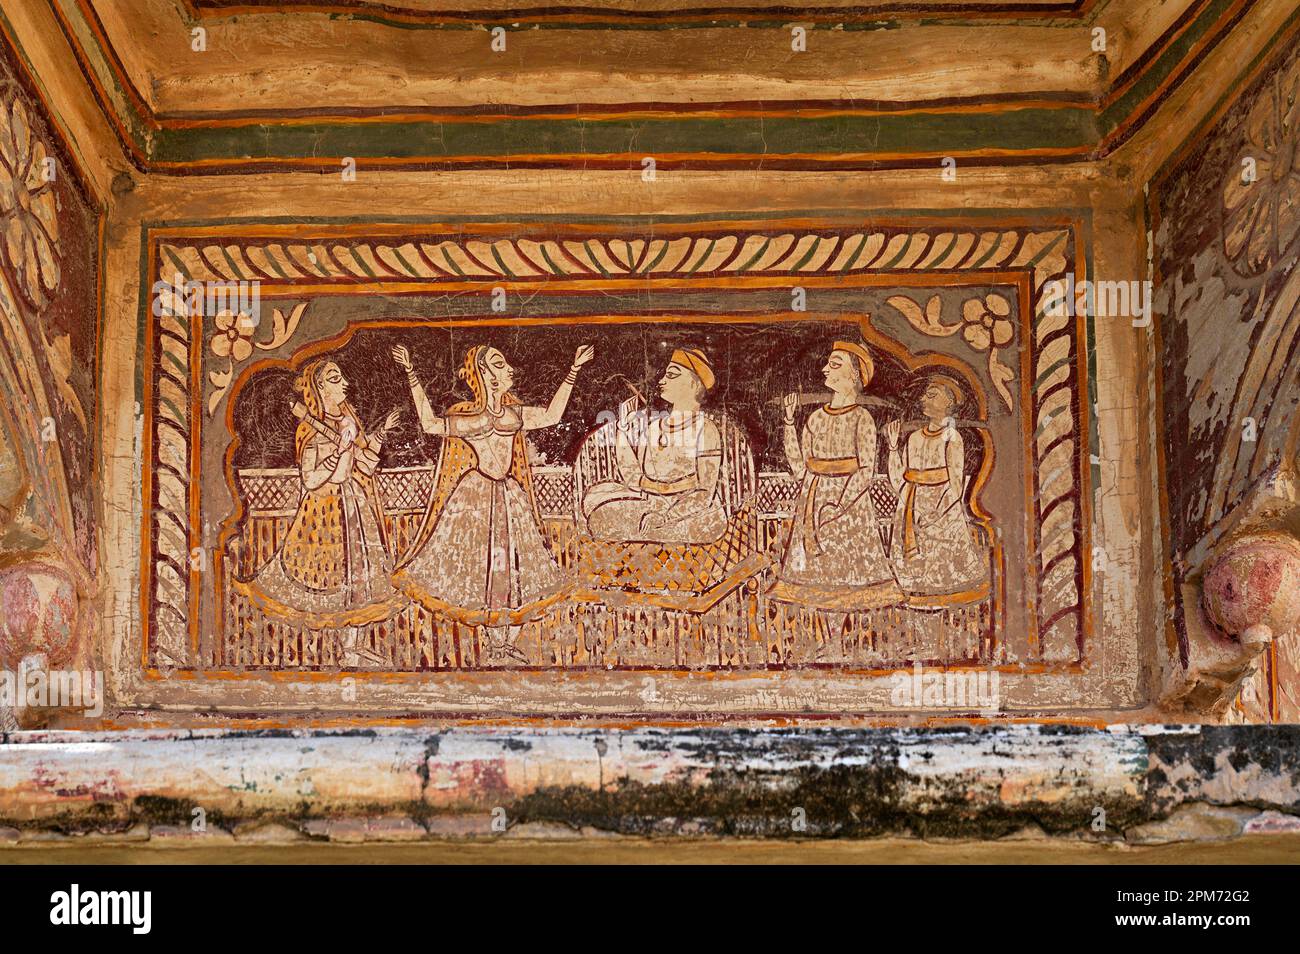 Peintures mythologiques colorées sur le mur intérieur d'un vieux chhatri (cénotaphe), Seth Anantram Podar et la famille ki smarak rupi chhatri, situé dans RAM Banque D'Images